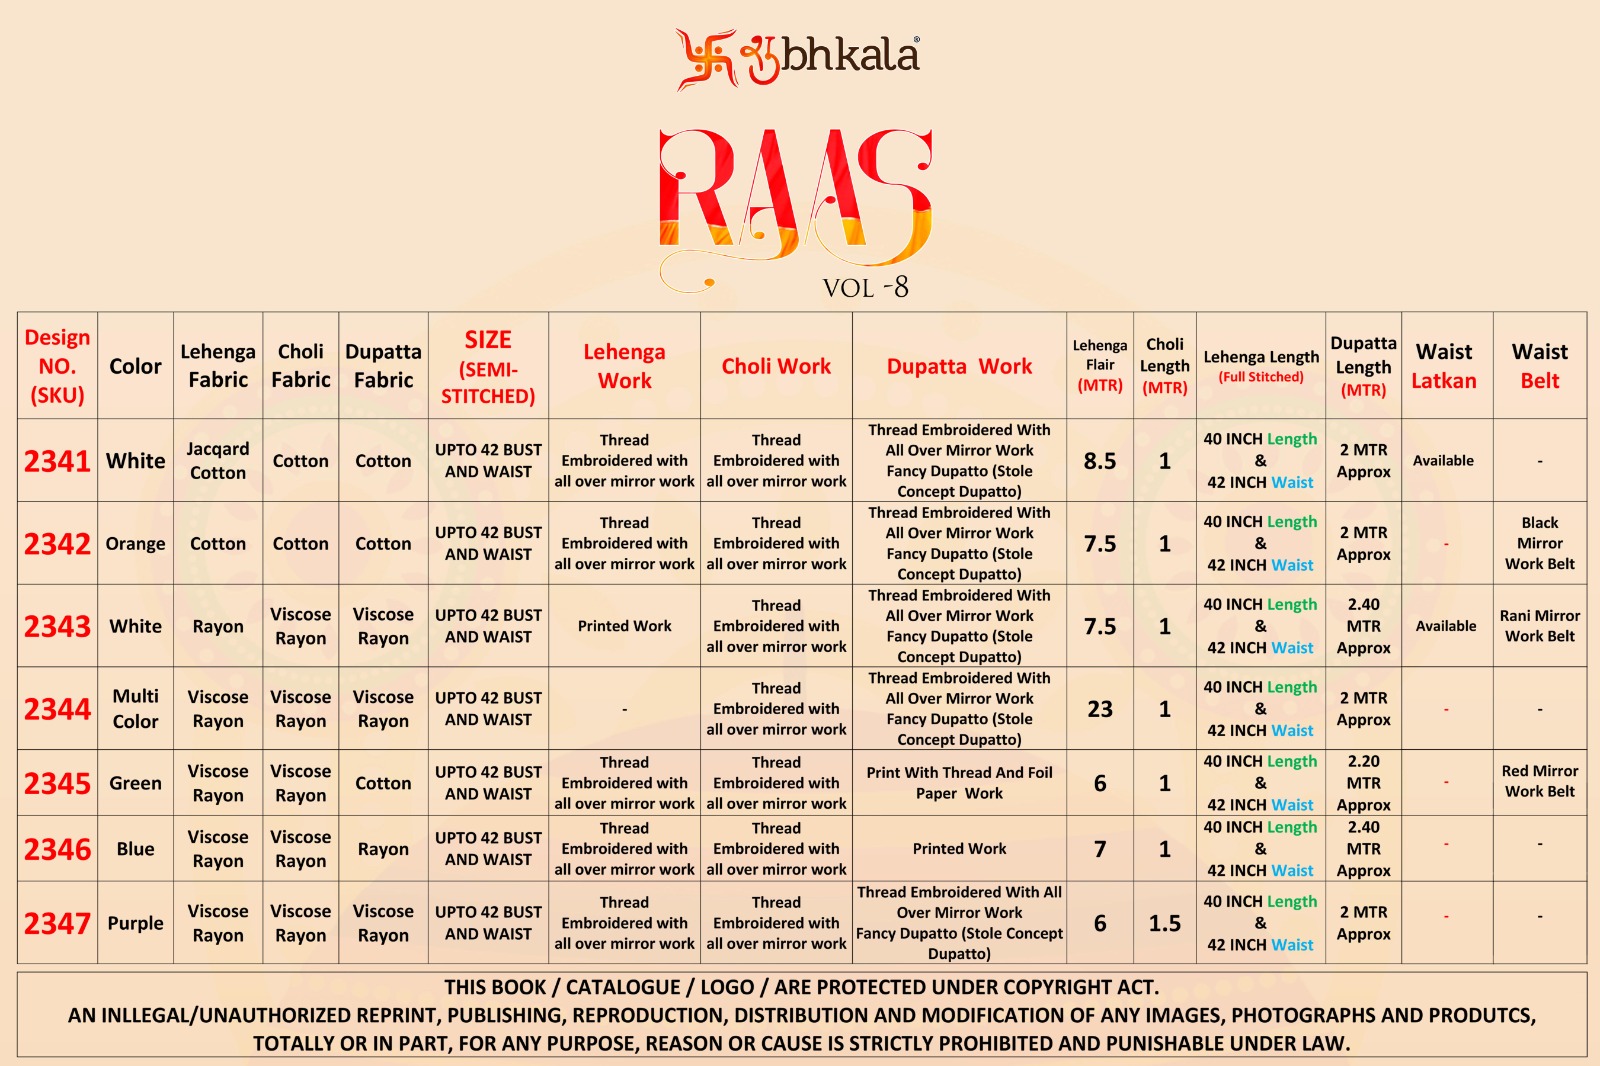 Shubhkala Raas Vol 8 collection 1